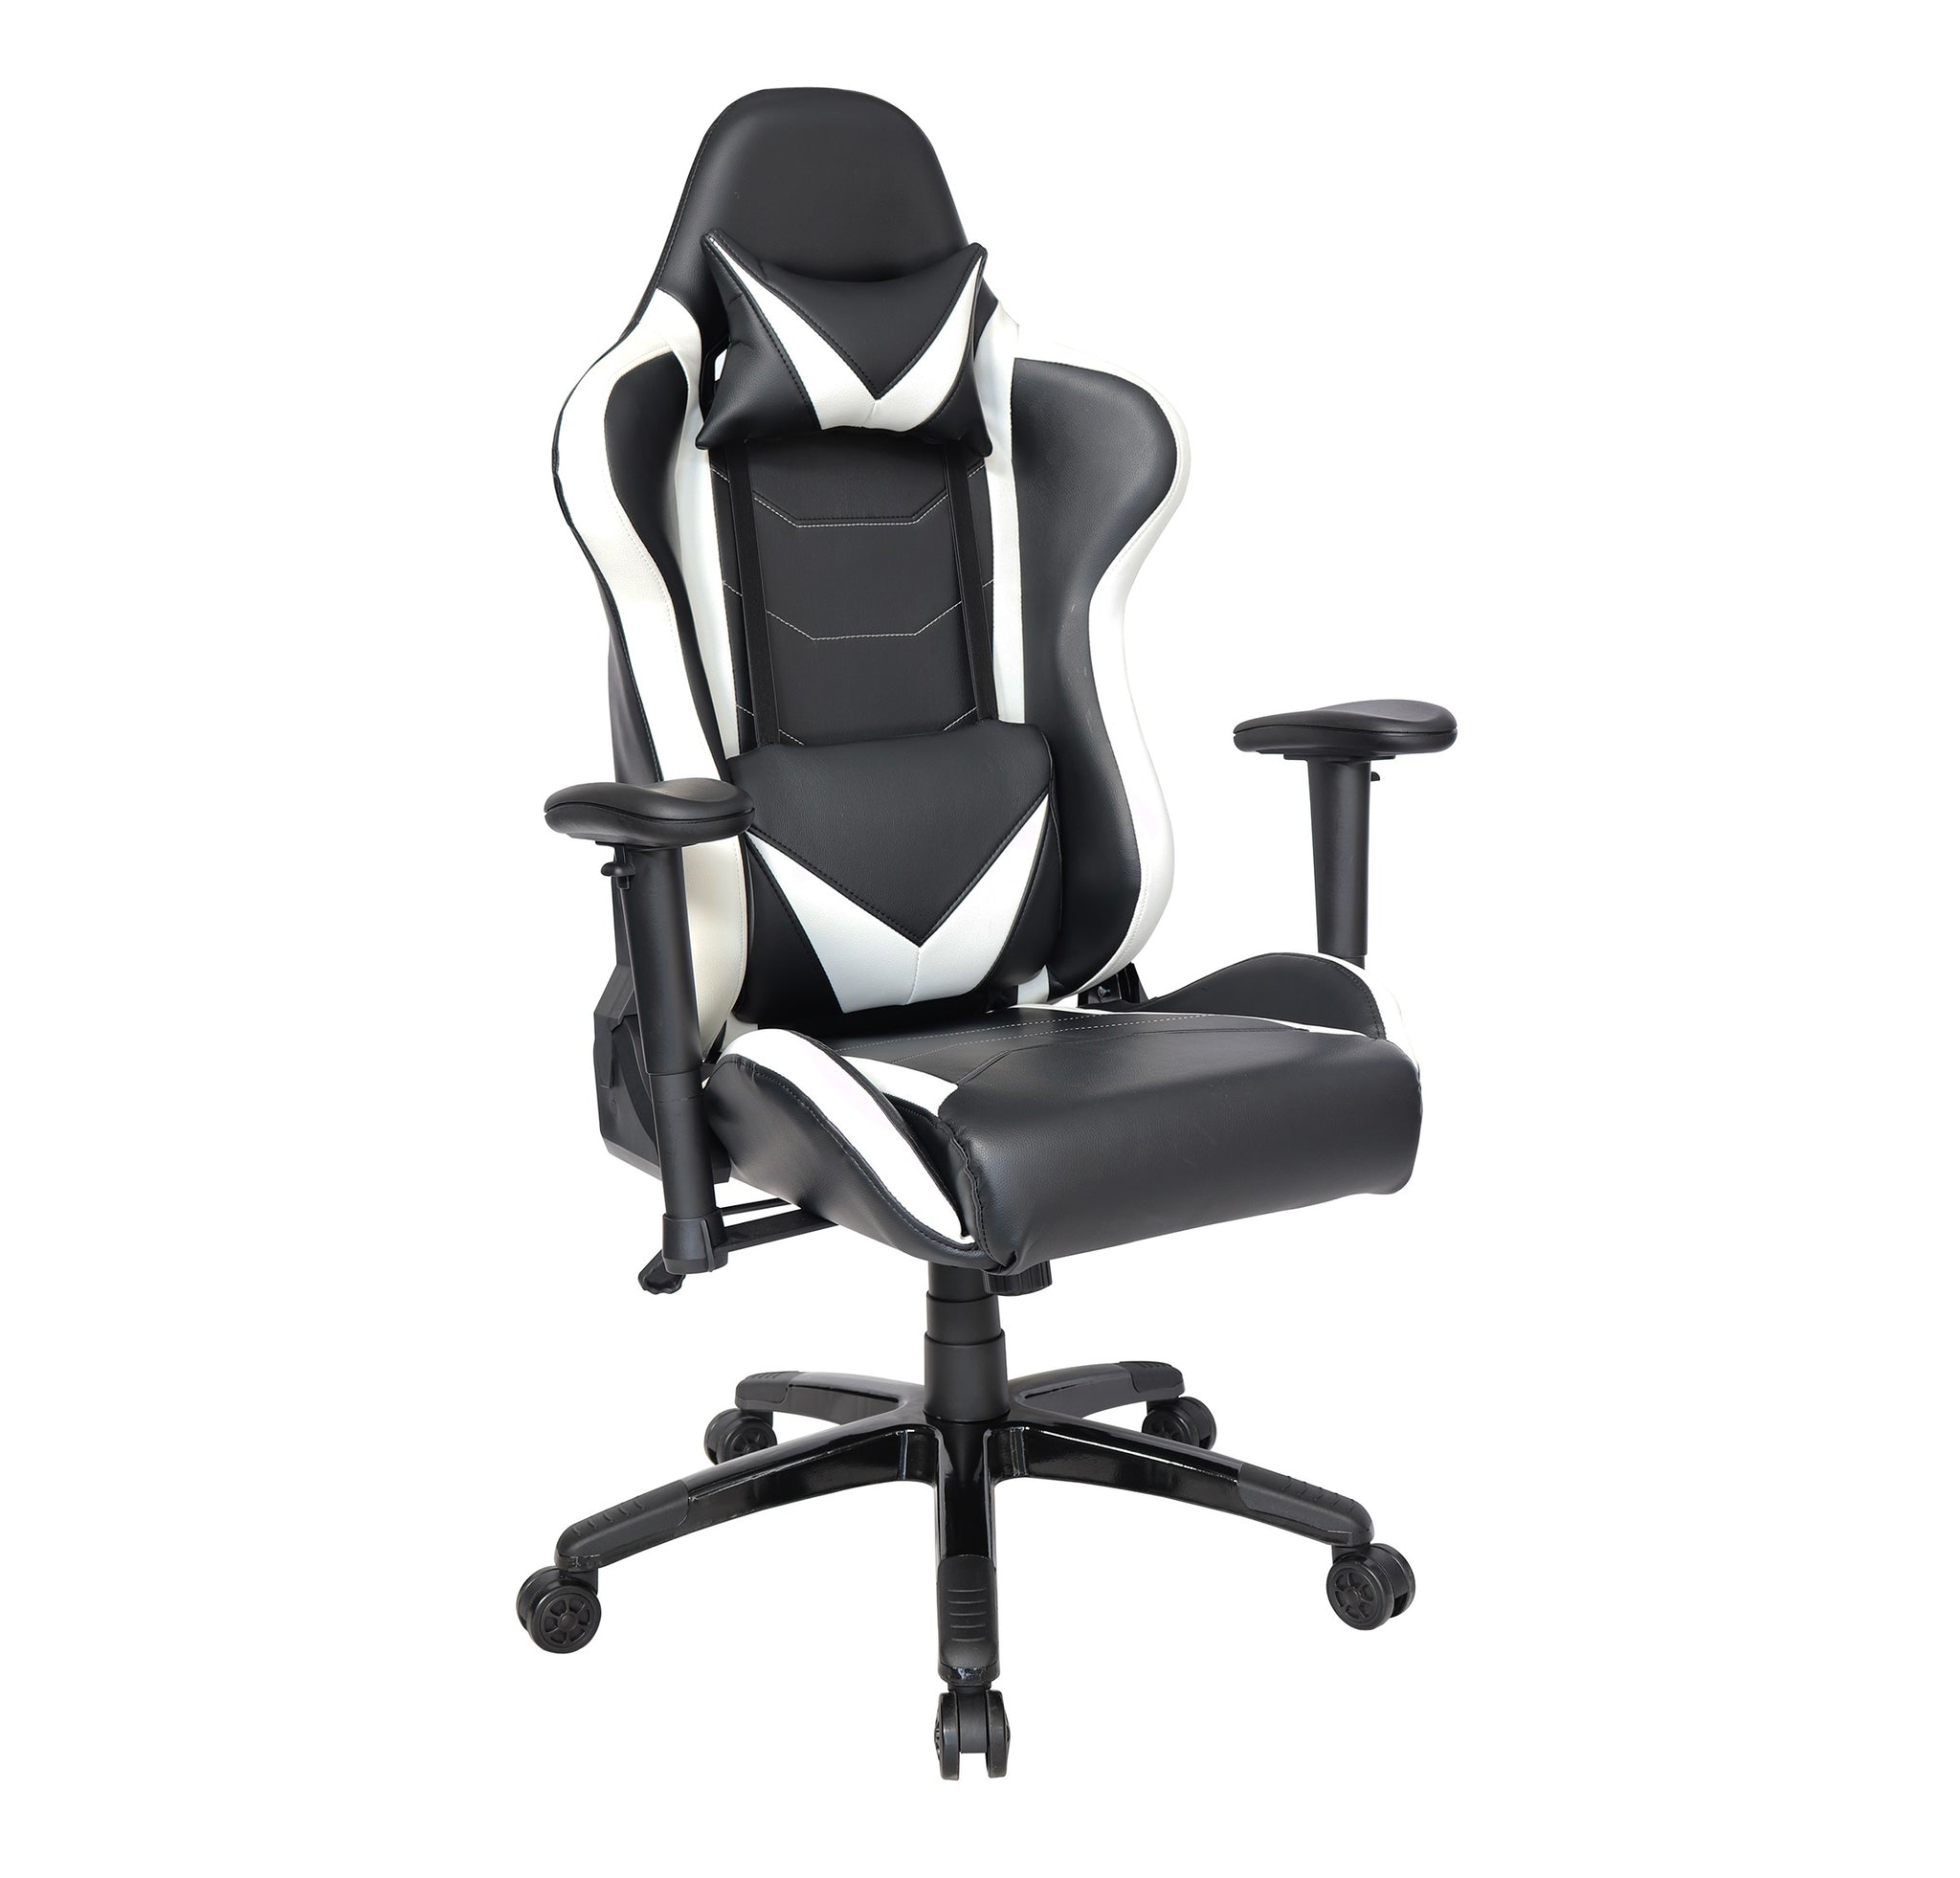 Sillón Gamer-002 respaldo y asiento tapizado en leather blanco con base nylon